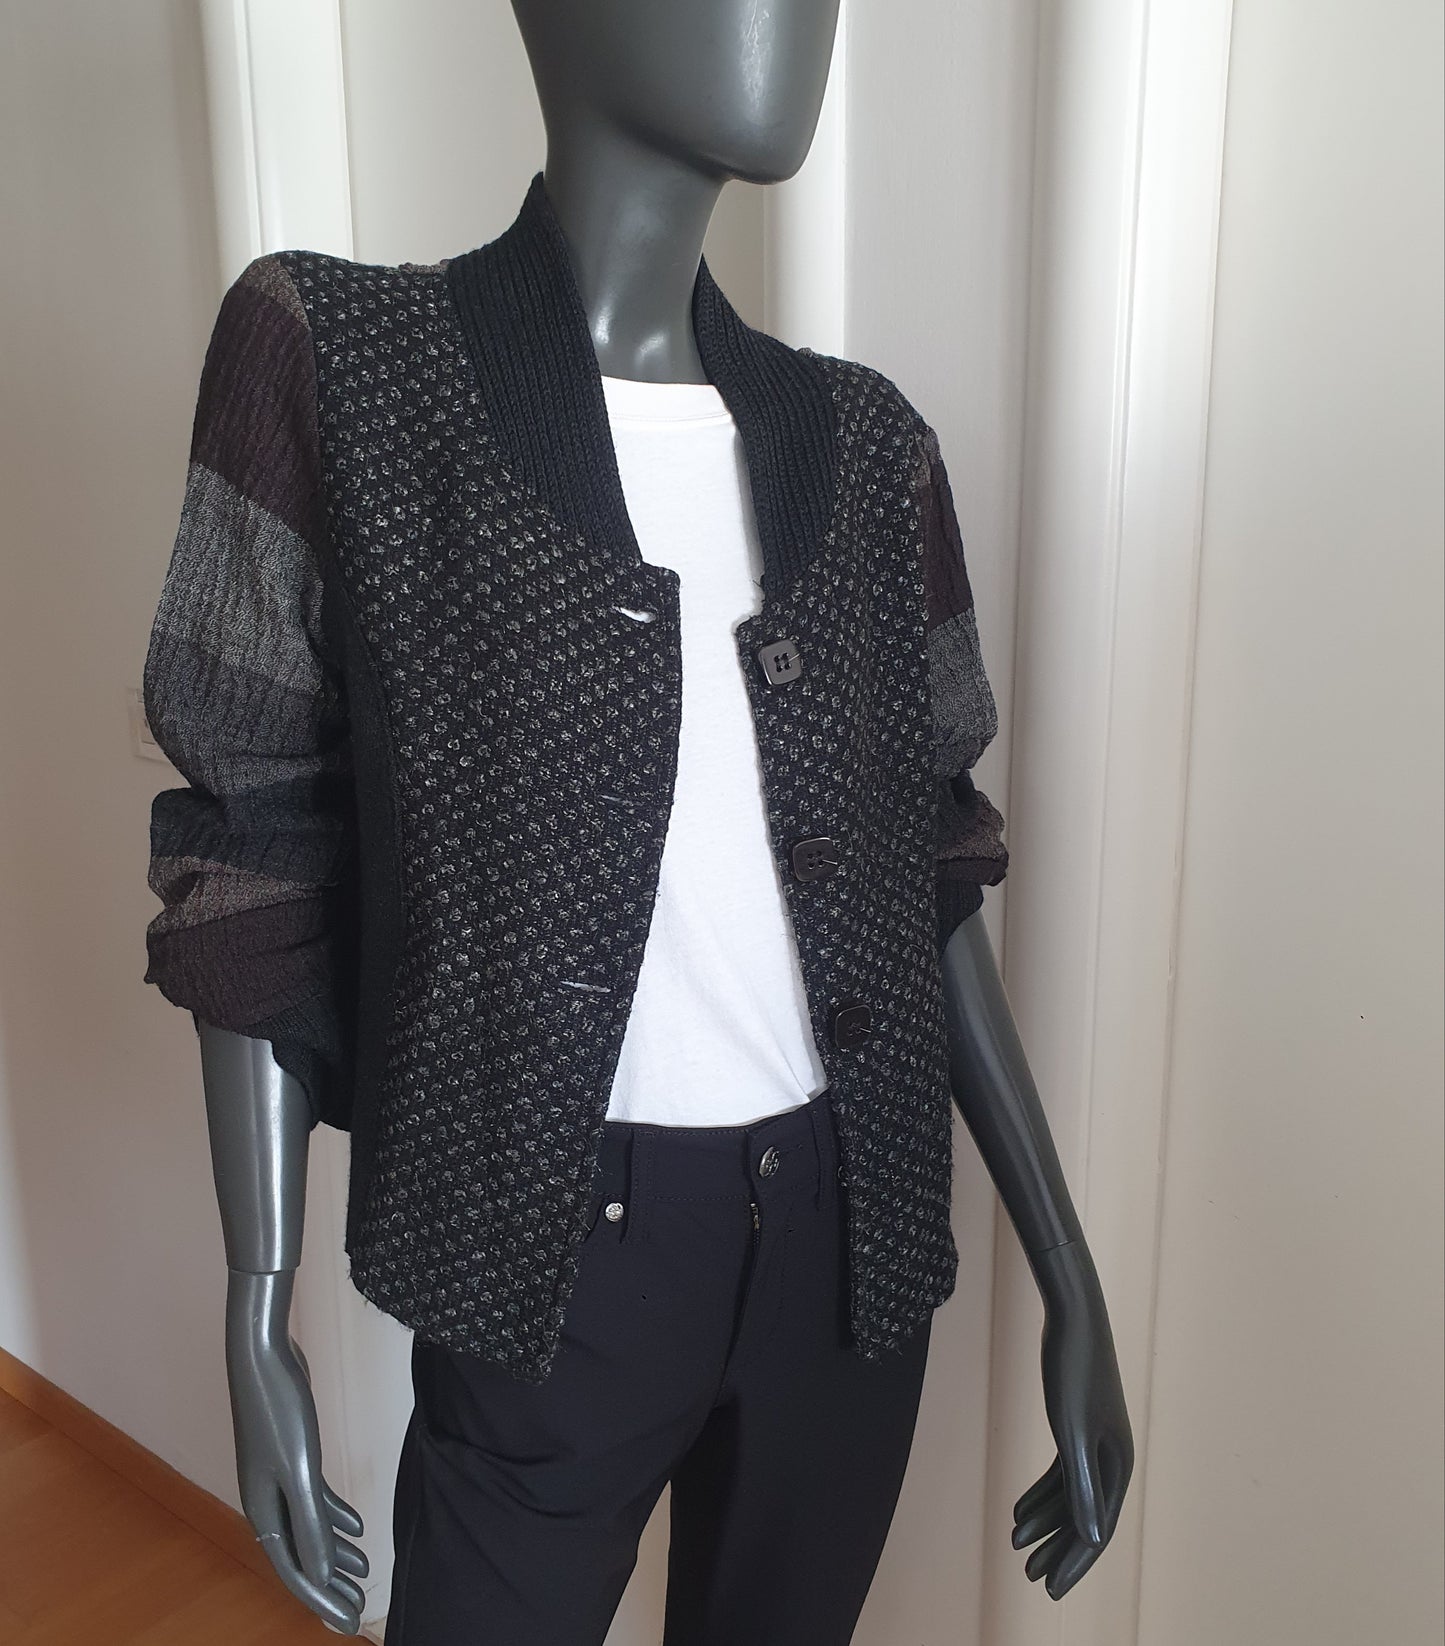 KELLO vunena jakna danskog brenda od kombiniranih materijala/uzoraka